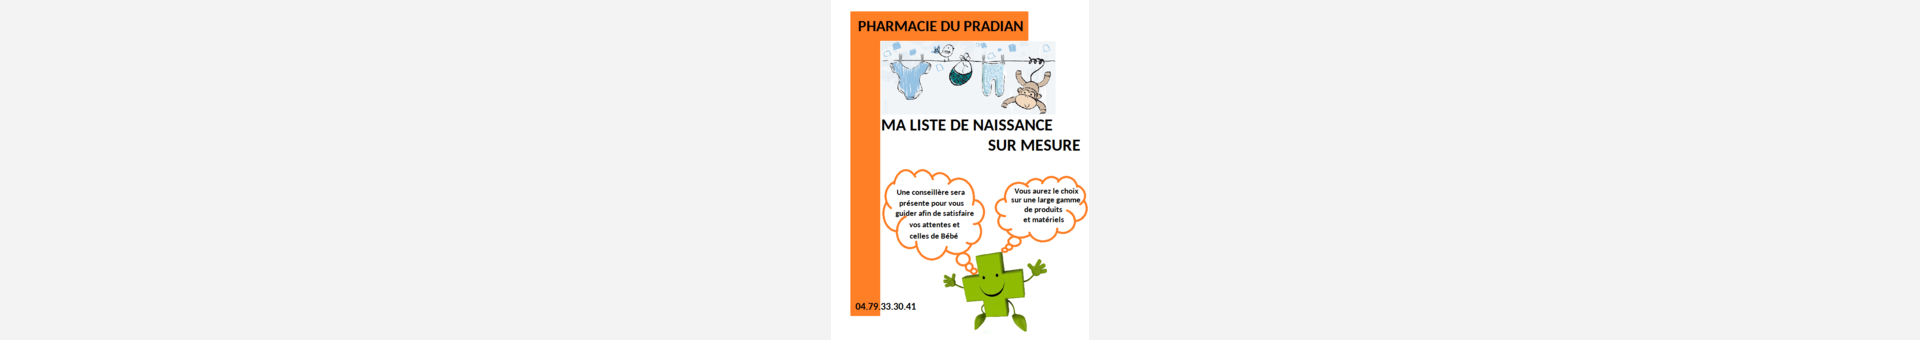 Pharmacie Du Pradian,Bassens